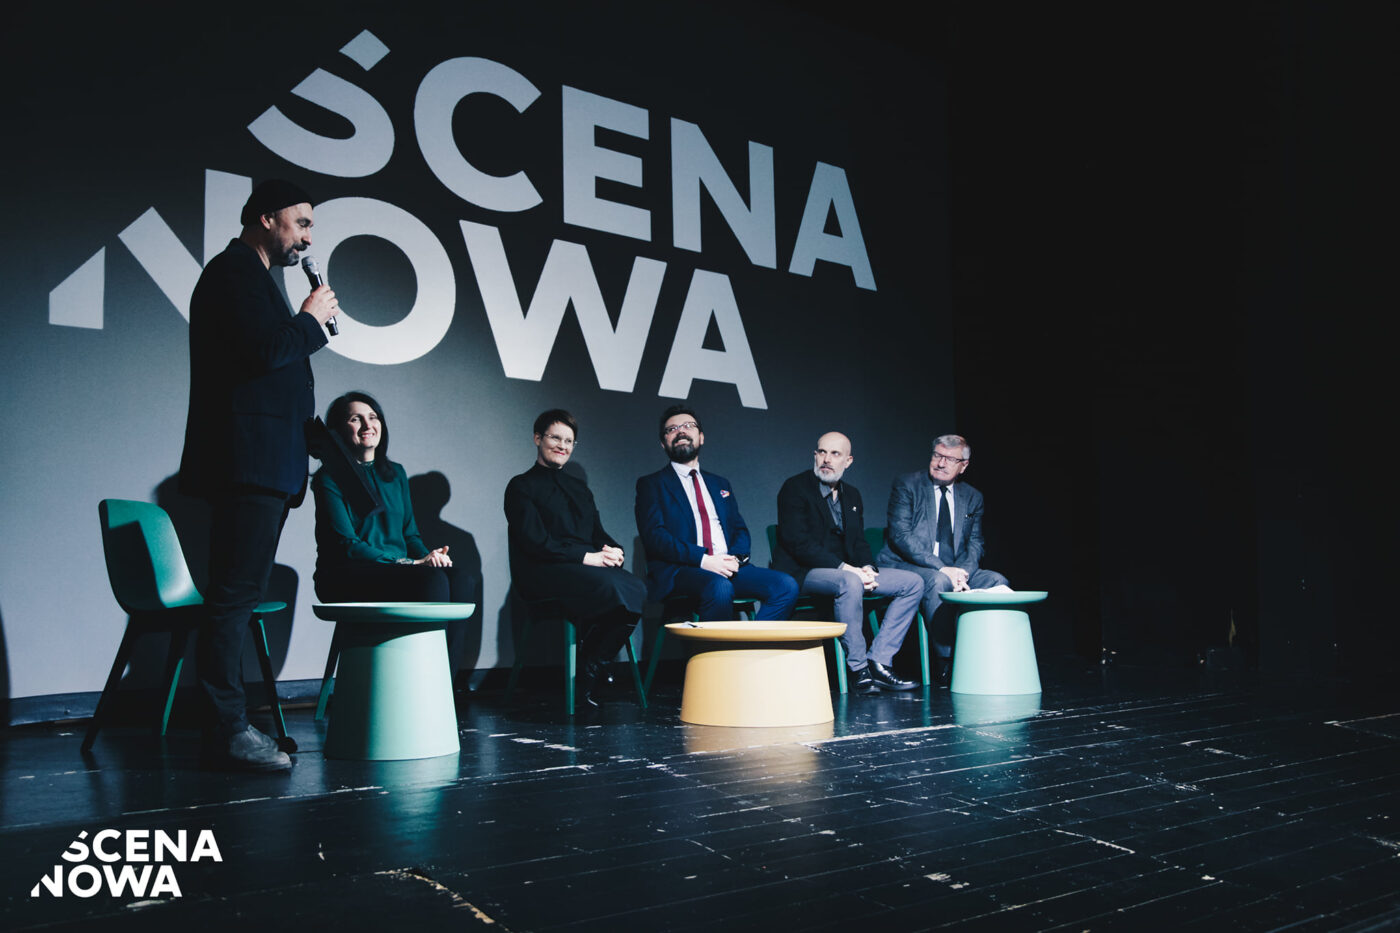 Zastępca dyrektora do spraw artystycznych przemawiający do mikrofonu na scenie. Pięć osób siedzących na scenie za stolikami, patrzą się na przemawiającego. W tle wyświetlane logo SCENA NOWA.